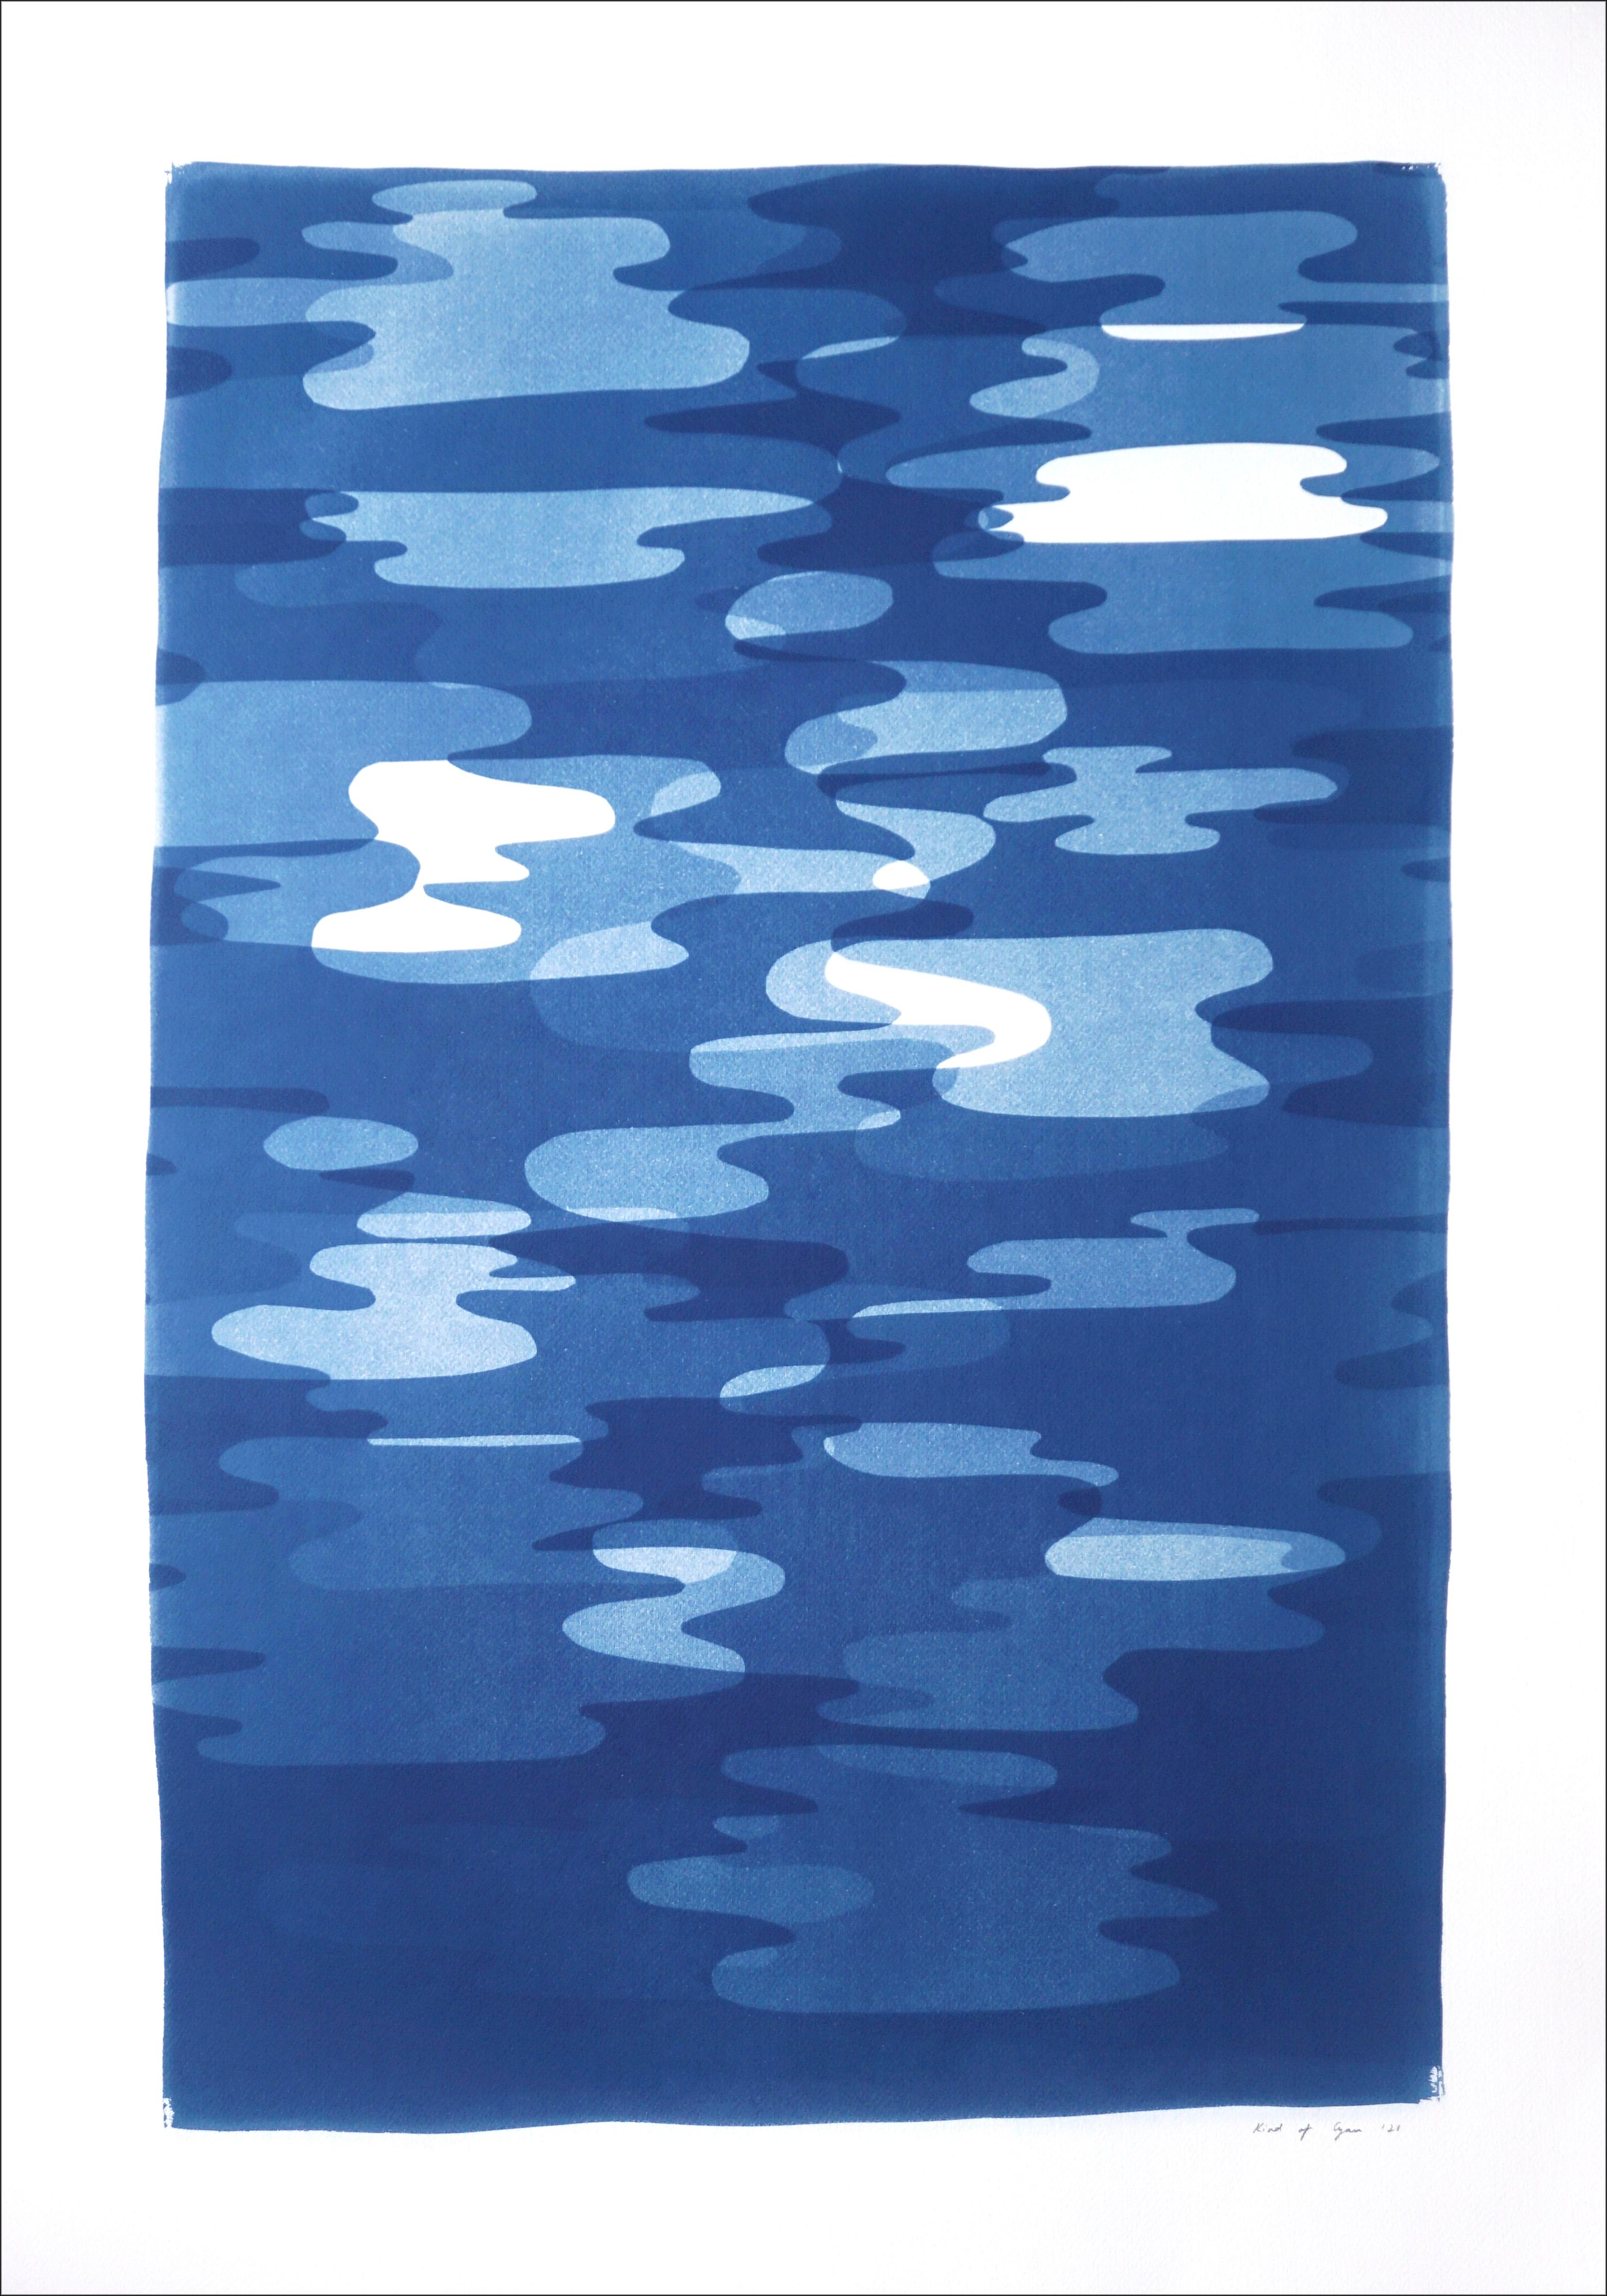 Smoke and Mirrors, Kunsthandwerkliche Drucke, einzigartige Monotypie, Memphis-Stil in Blau und Weiß – Print von Kind of Cyan